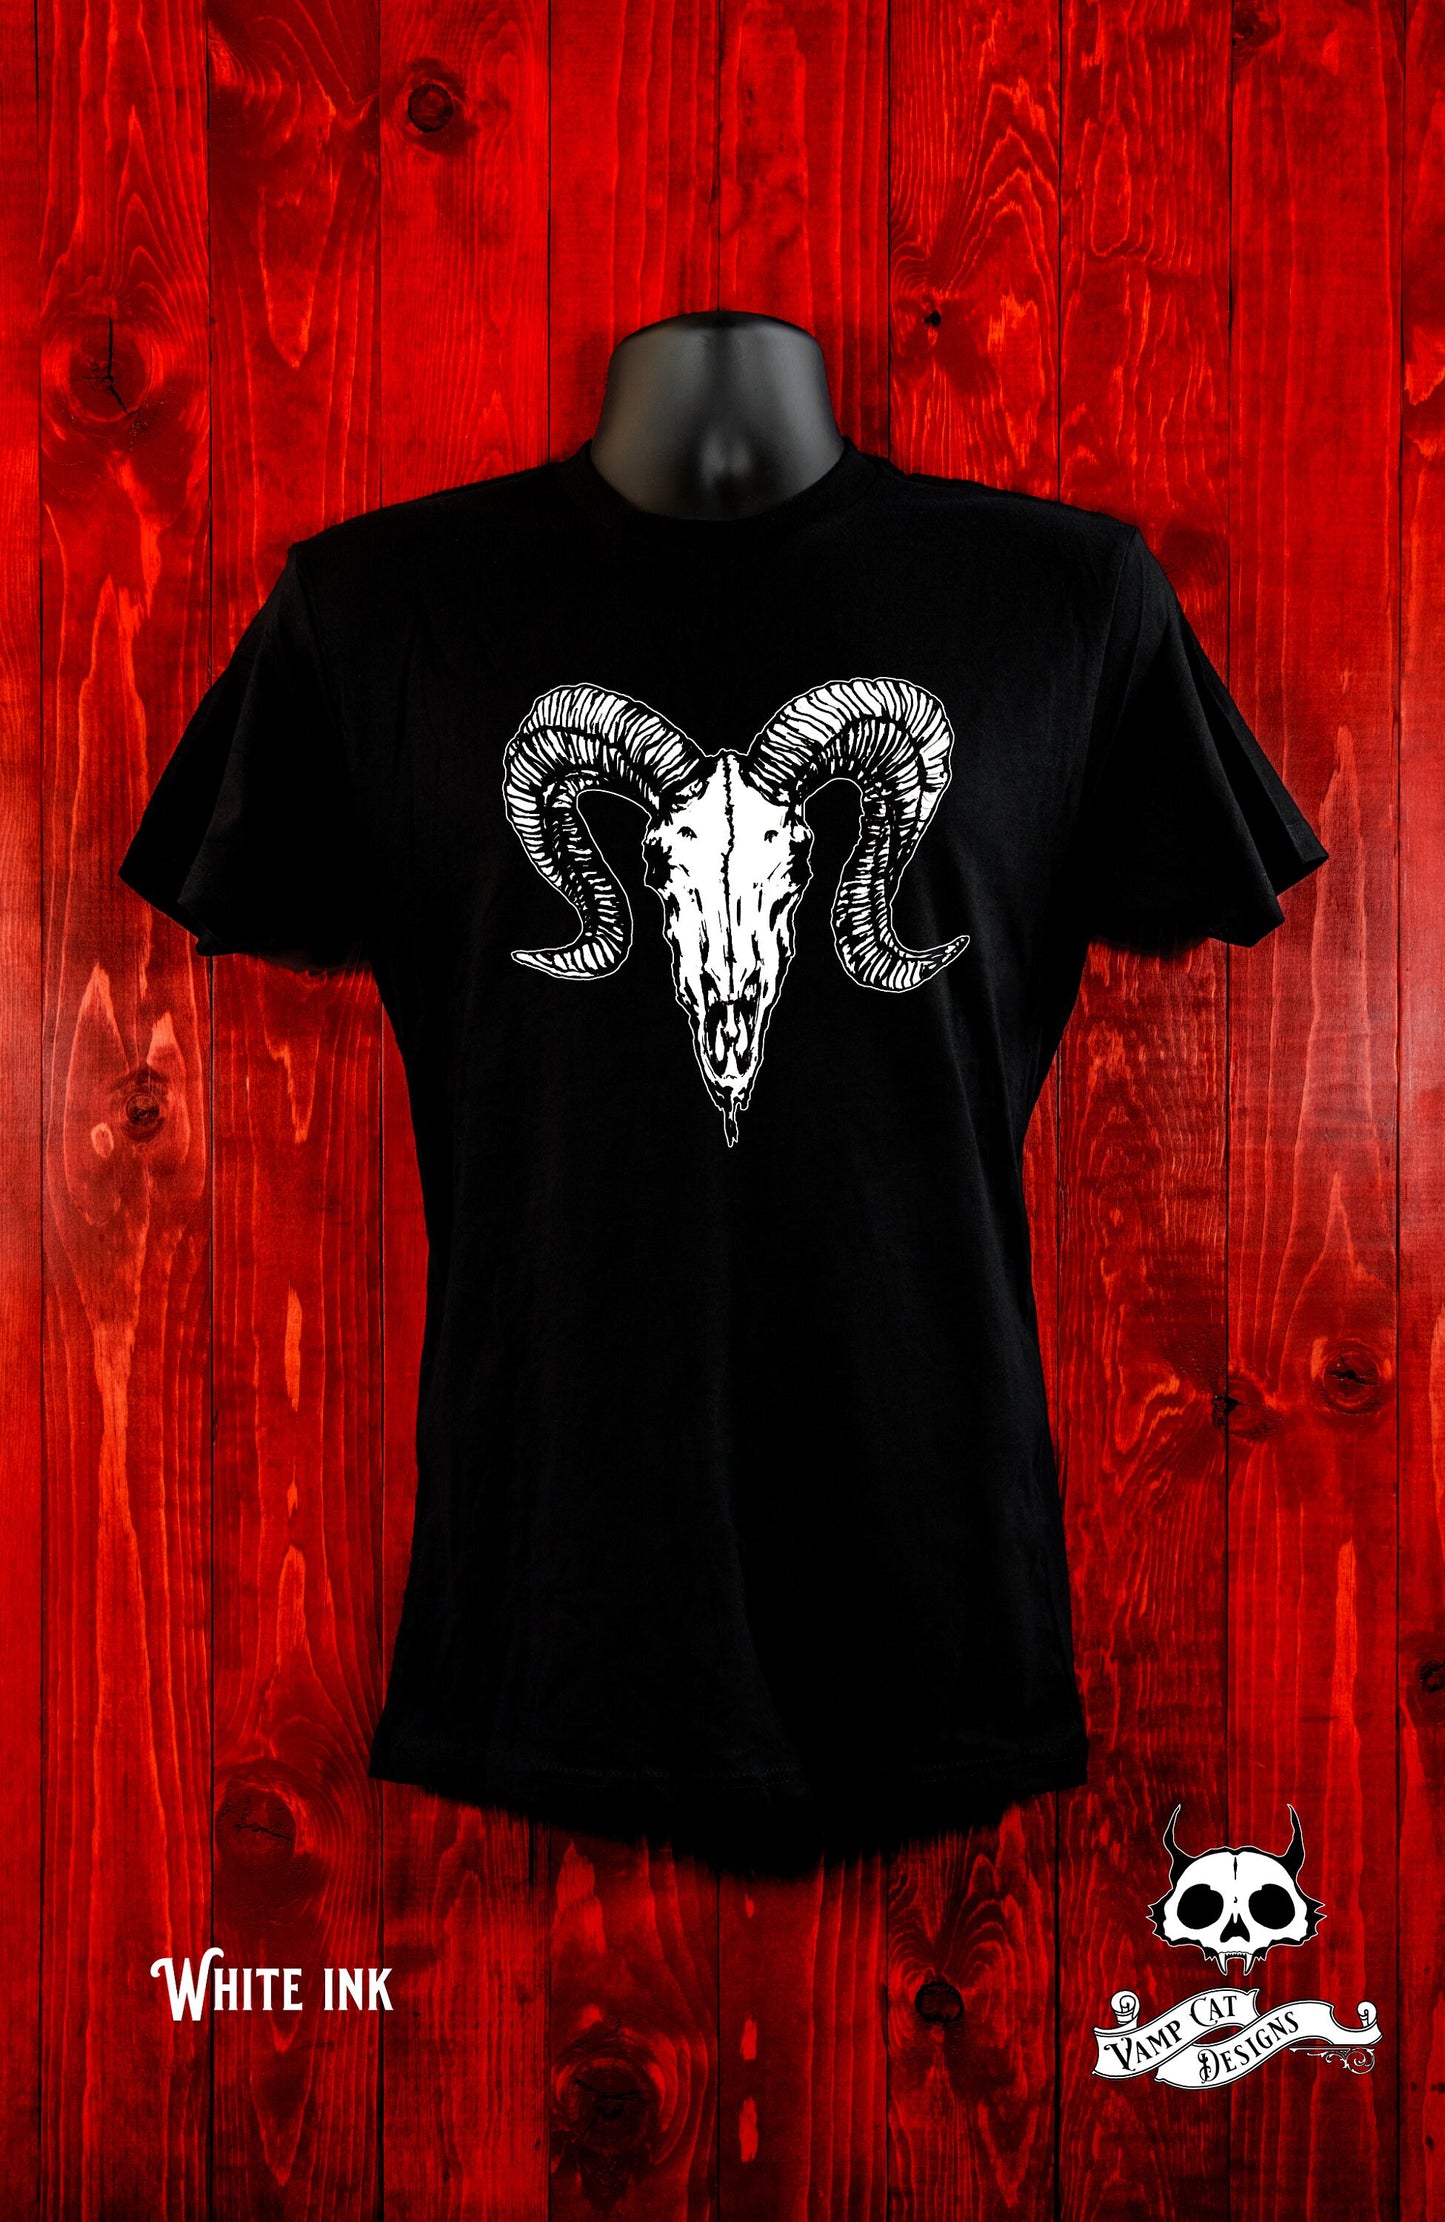 Dark Ram Skull-Unisex Jersey Tee-Dark Apparel-Gothic Gifts-Illustration-Ram T-shirt-Animal Skull-Silkscreen art-Women's-Men's-Occult Apparel